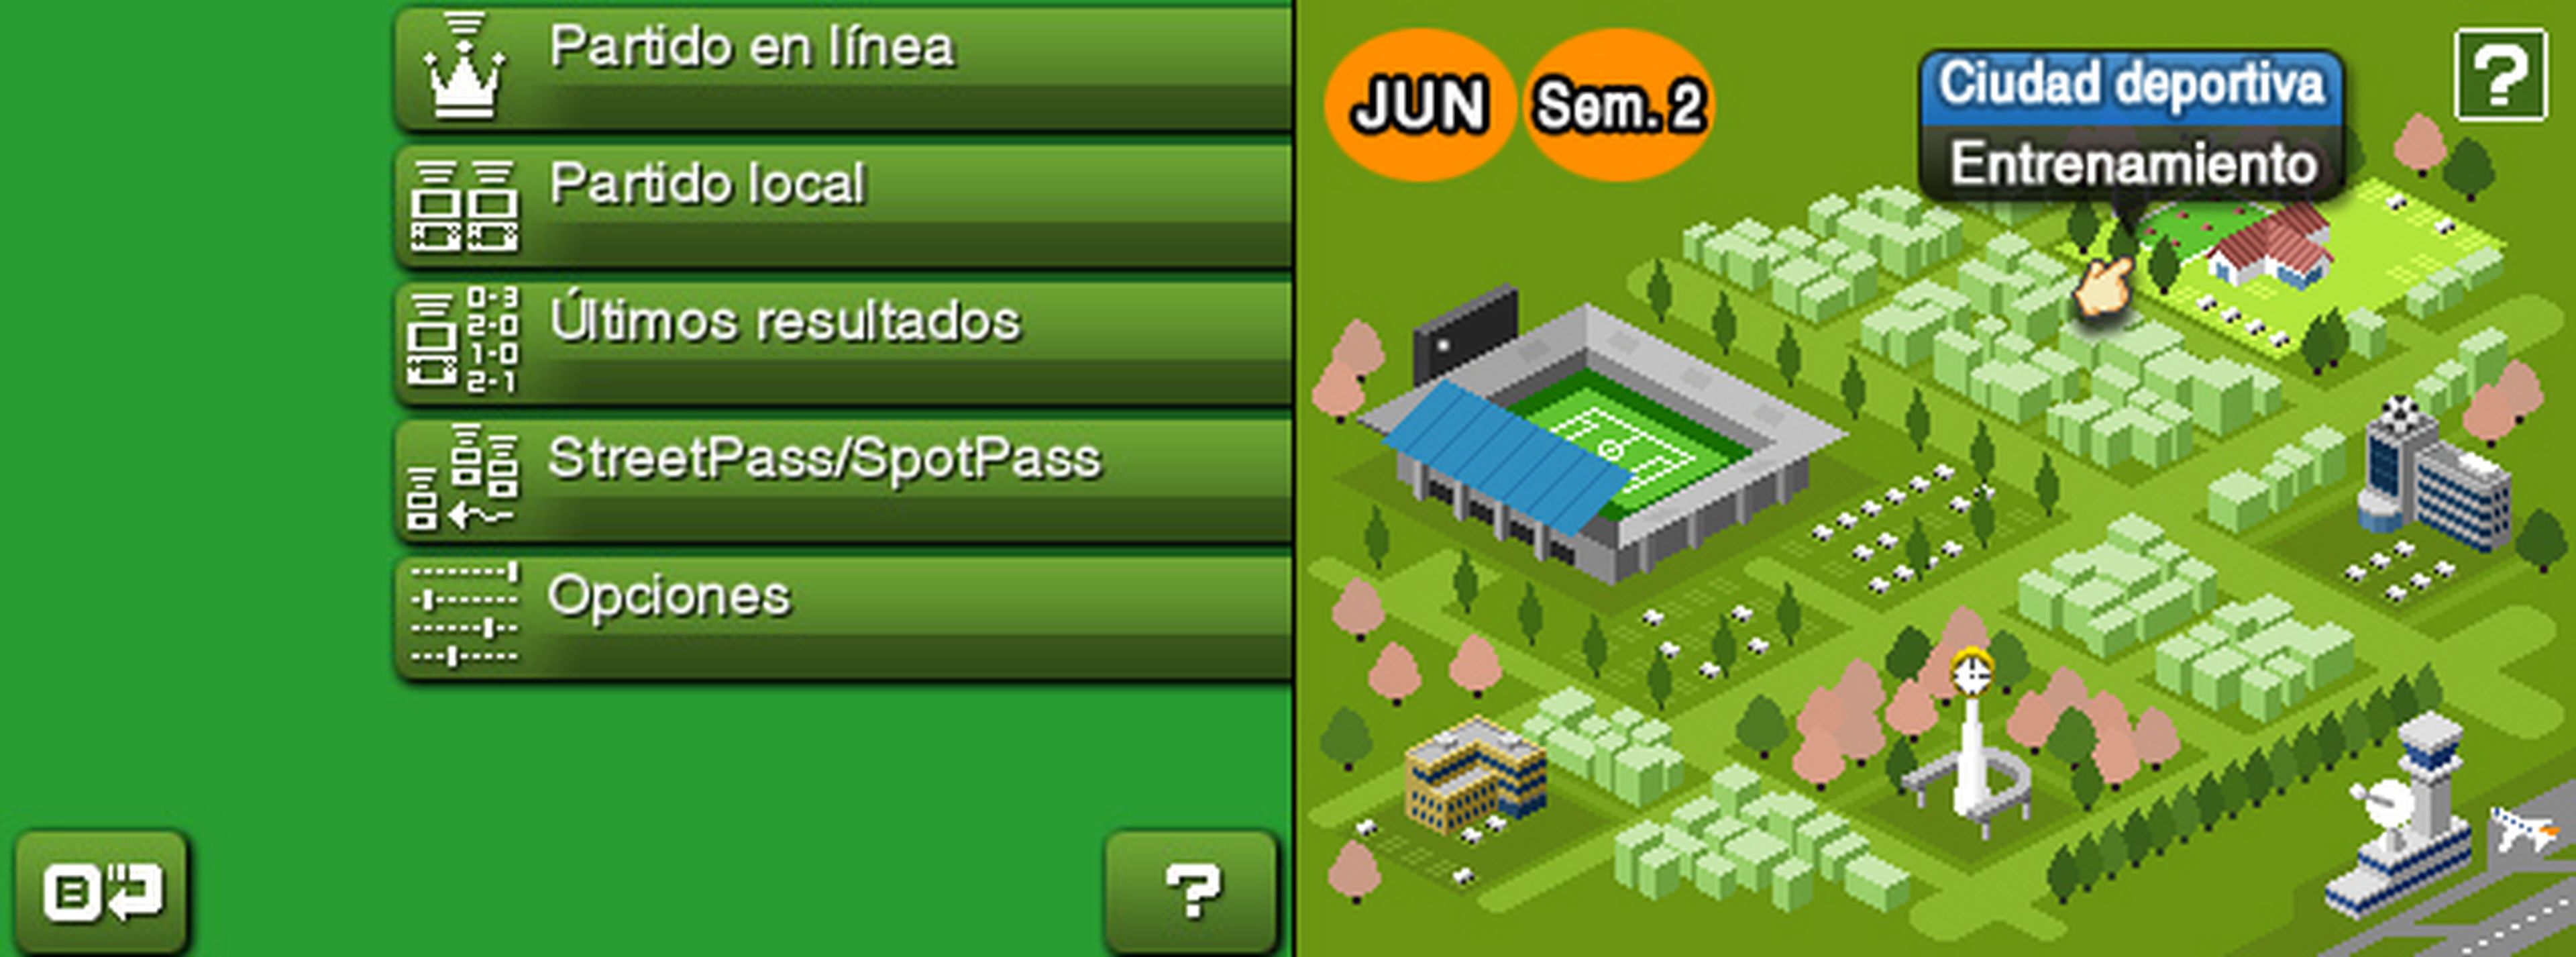 Análisis de Nintendo Pocket Football Club para 3DS